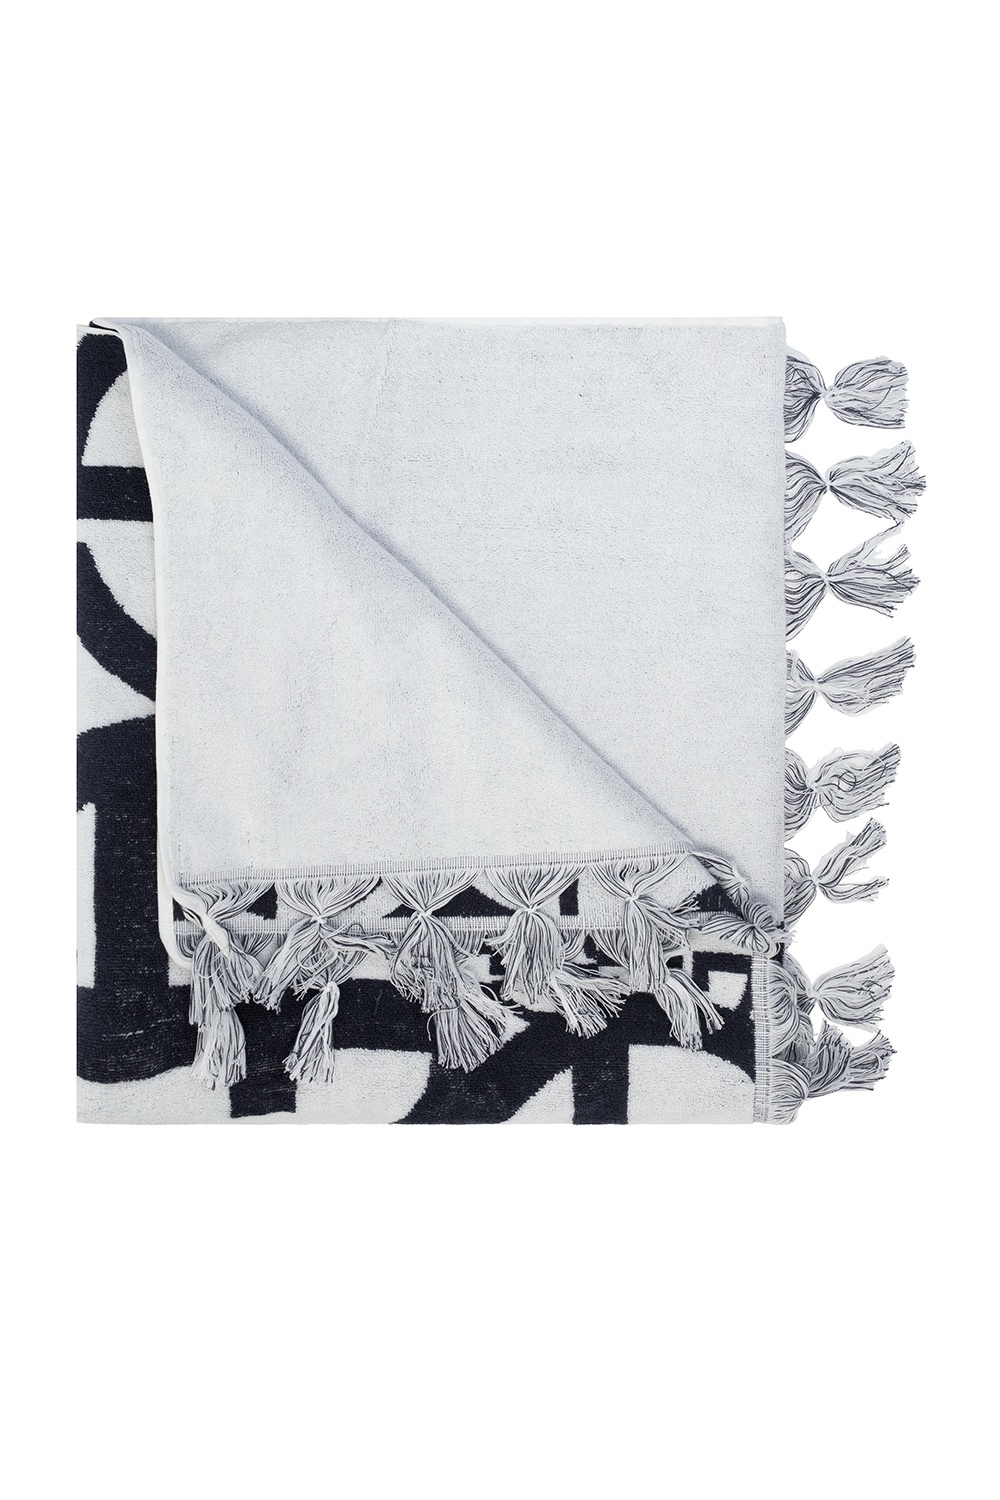 Giorgio Armani Embroidered towel | Men's Accessories | Vitkac